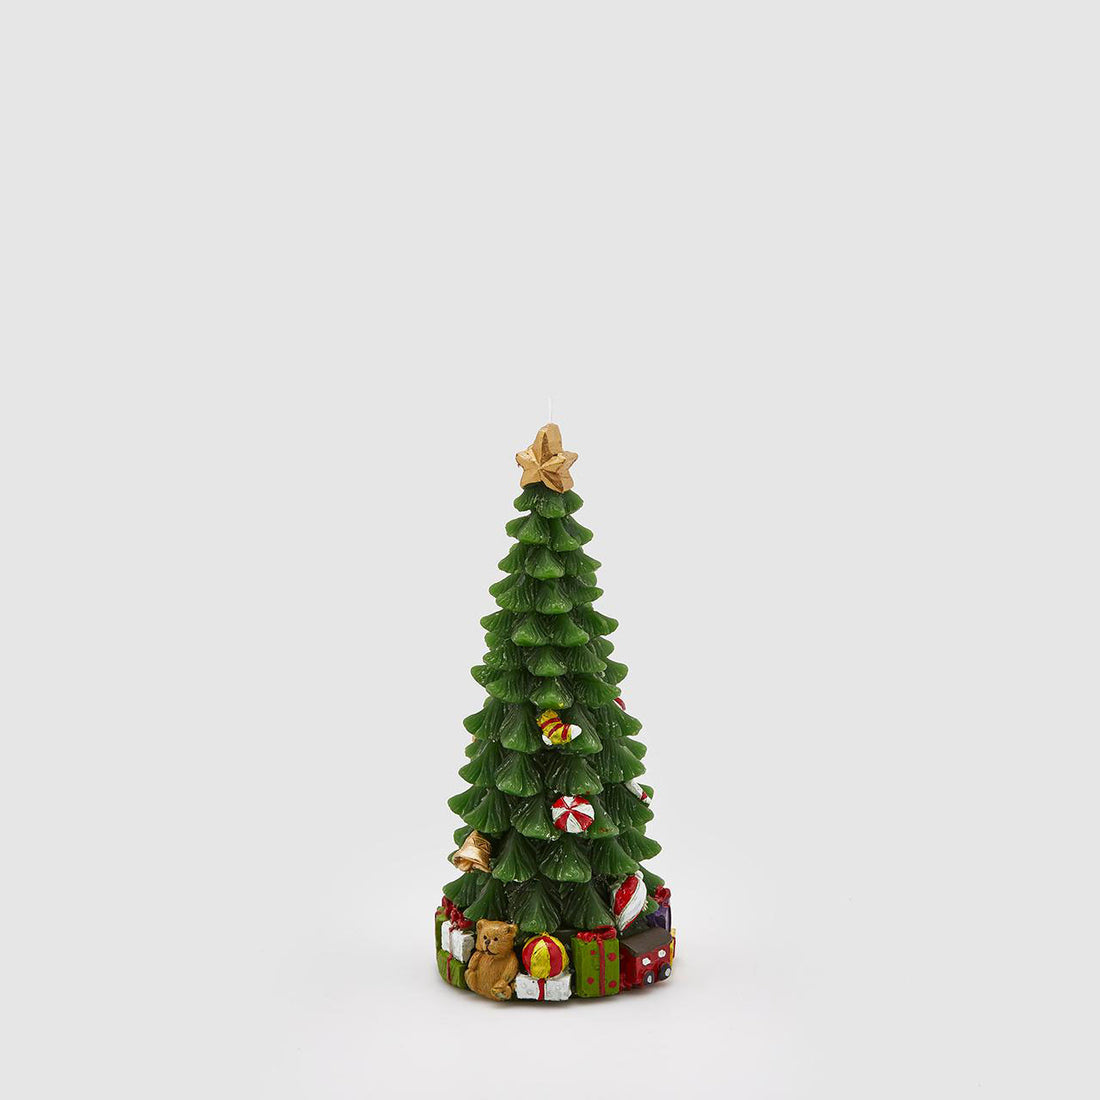 EDG - Candela Pino Albero di Natale Decorazione Natalizia 18cm